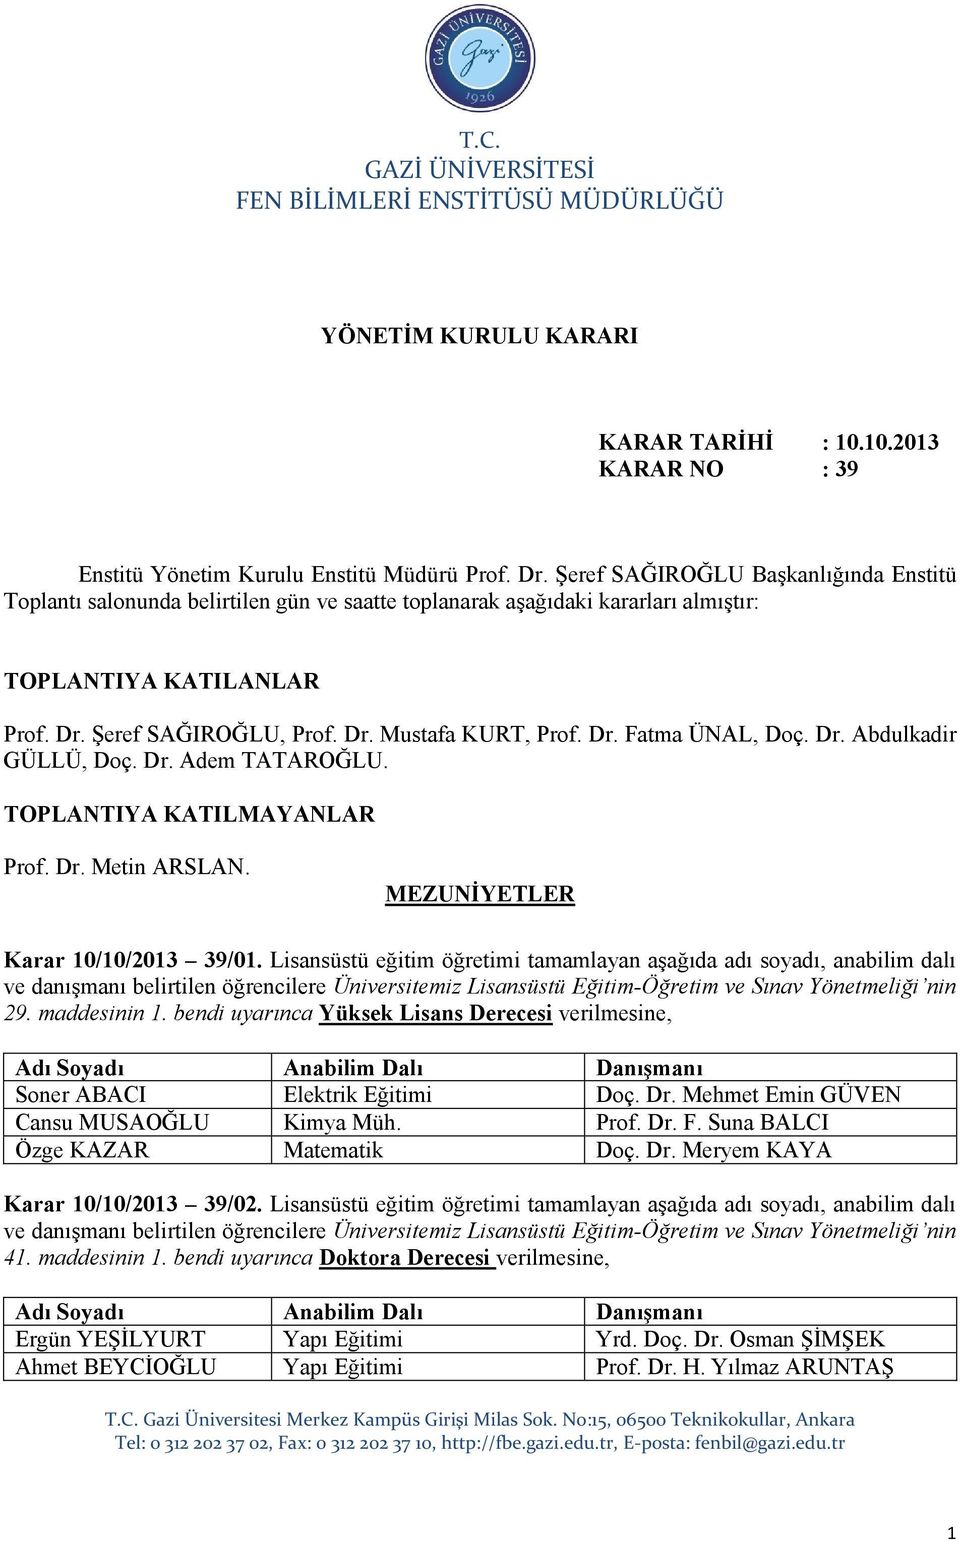 Dr. Fatma ÜNAL, Doç. Dr. Abdulkadir GÜLLÜ, Doç. Dr. Adem TATAROĞLU. TOPLANTIYA KATILMAYANLAR Prof. Dr. Metin ARSLAN. MEZUNİYETLER Karar 10/10/2013 39/01.